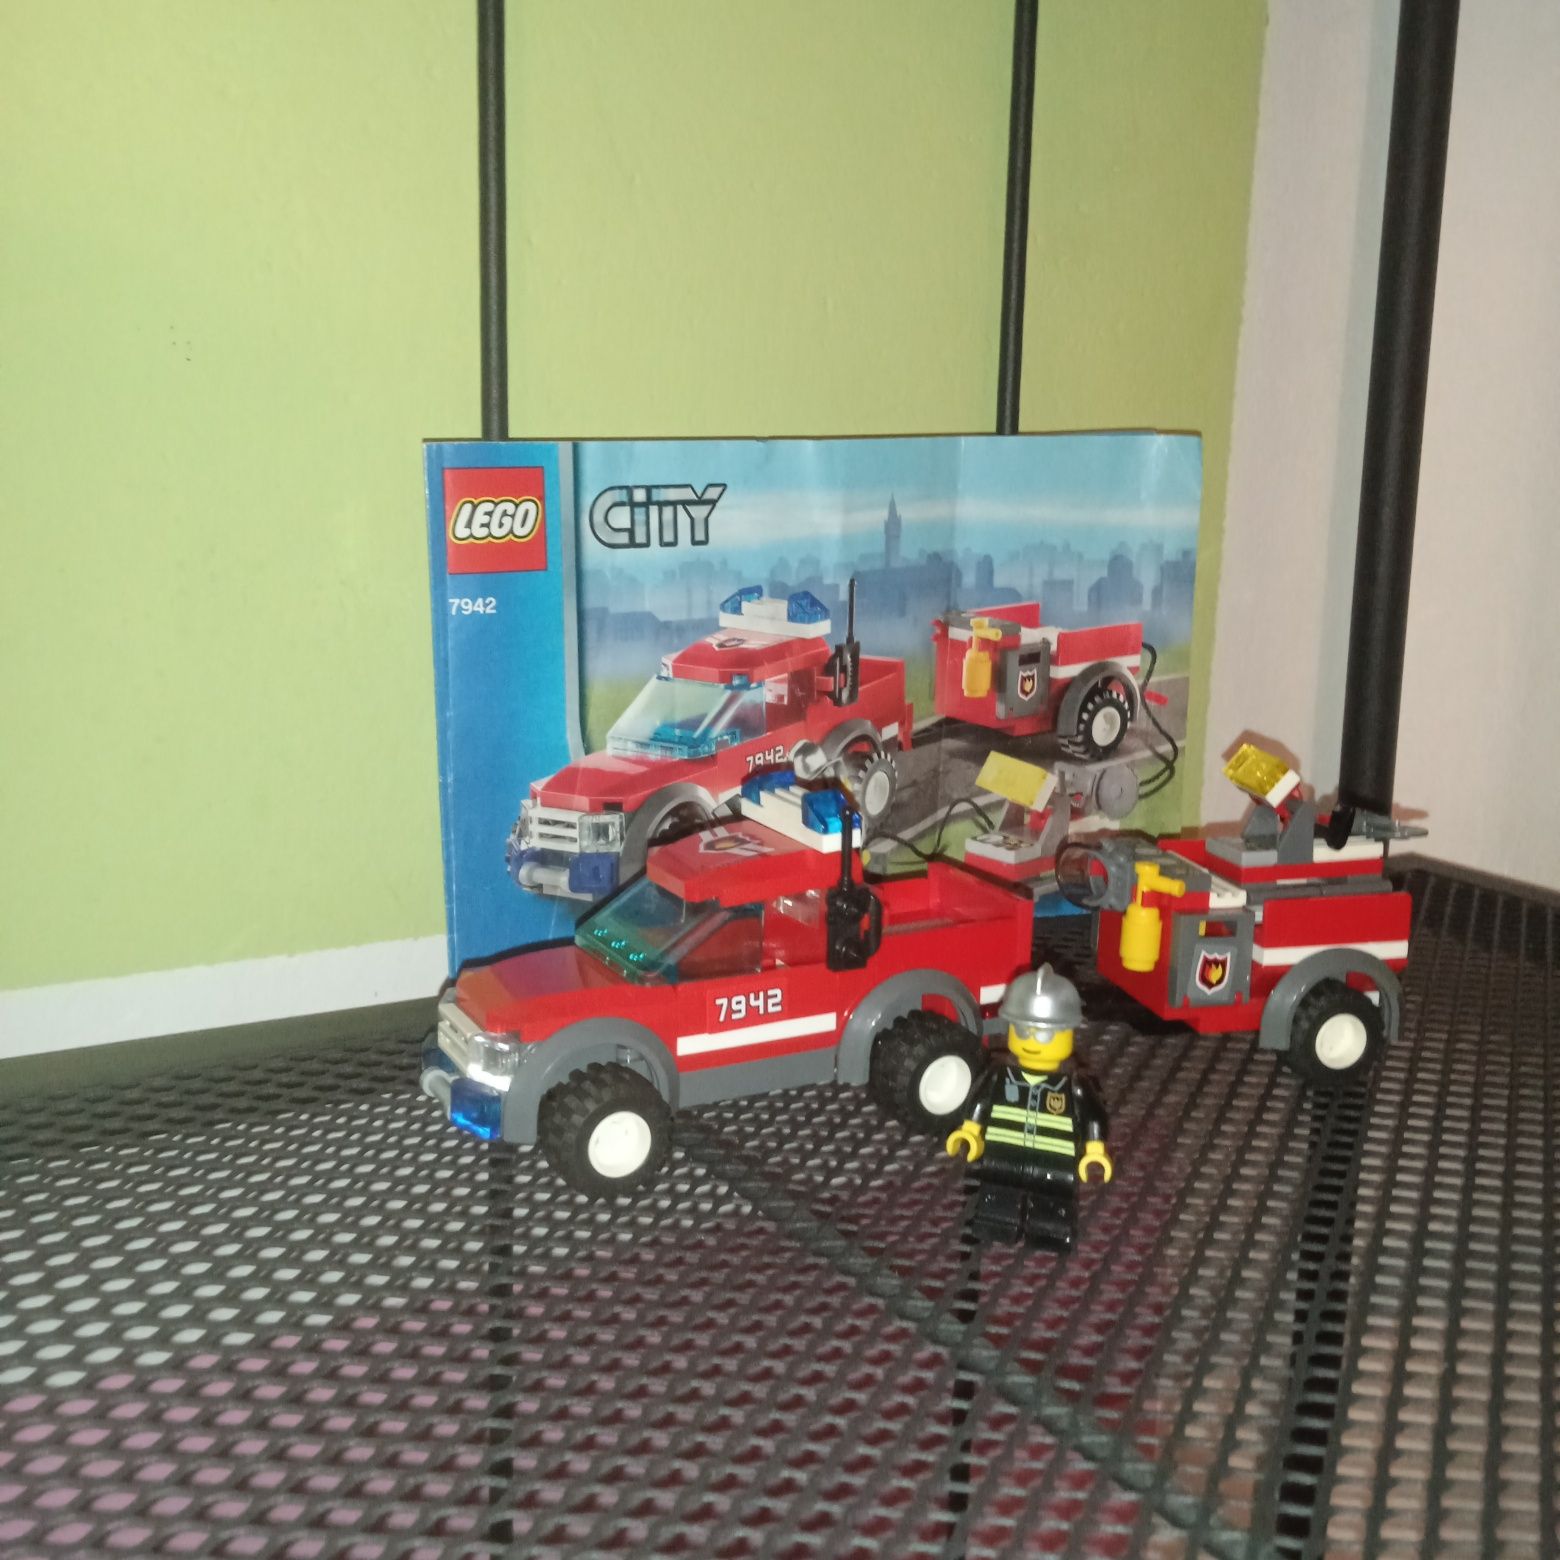 Zestaw klockow LEGO City 7942